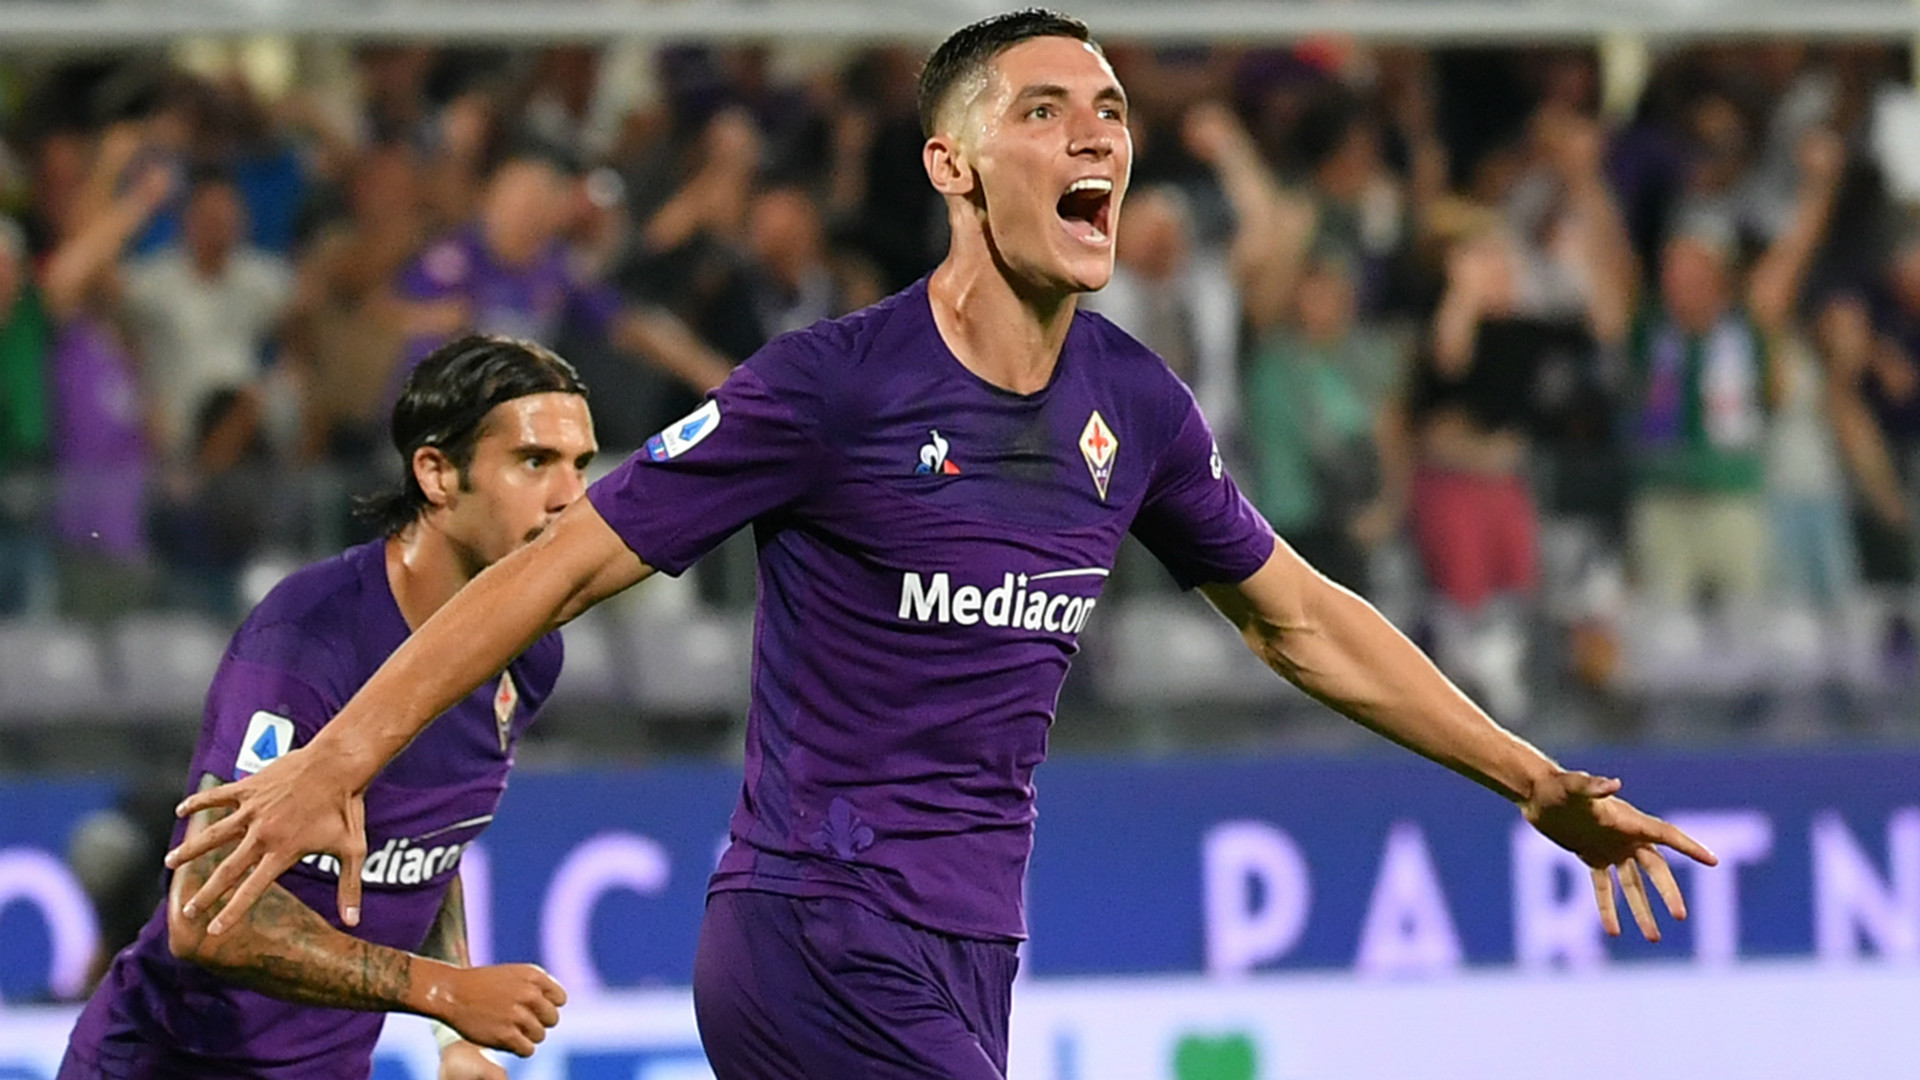 Fiorentina-Genoa 1-1, Milenkovic riacciuffa il Genoa al 98′. Primo punto per Prandelli